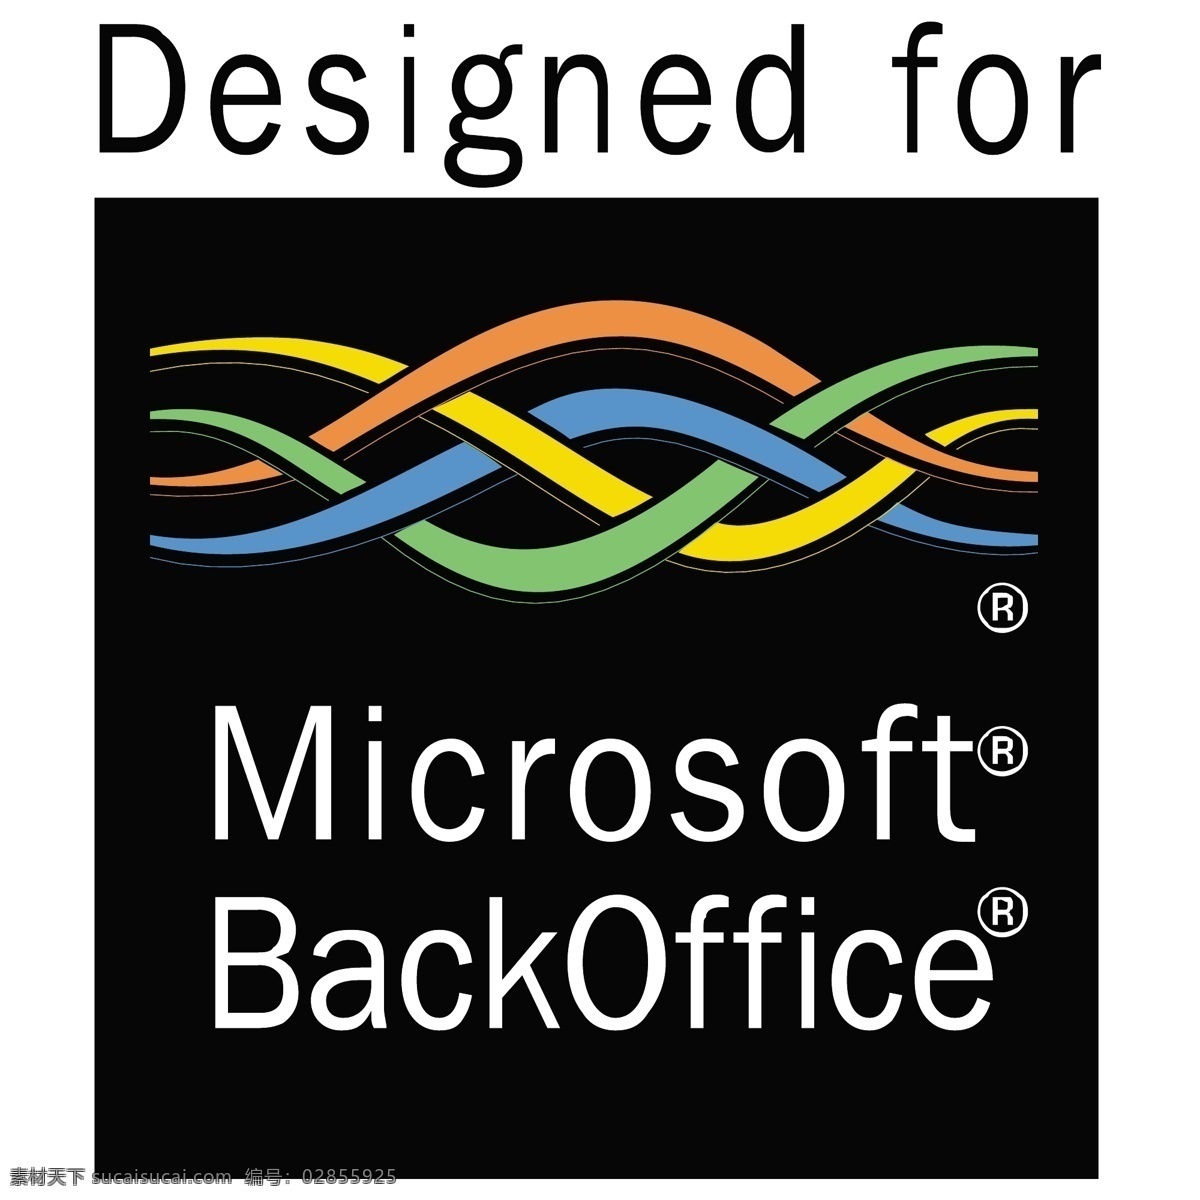 微软 backoffice 微软的后台 后台 微软向量 微软设计 矢量微软 下载免费微软 向量 黑色